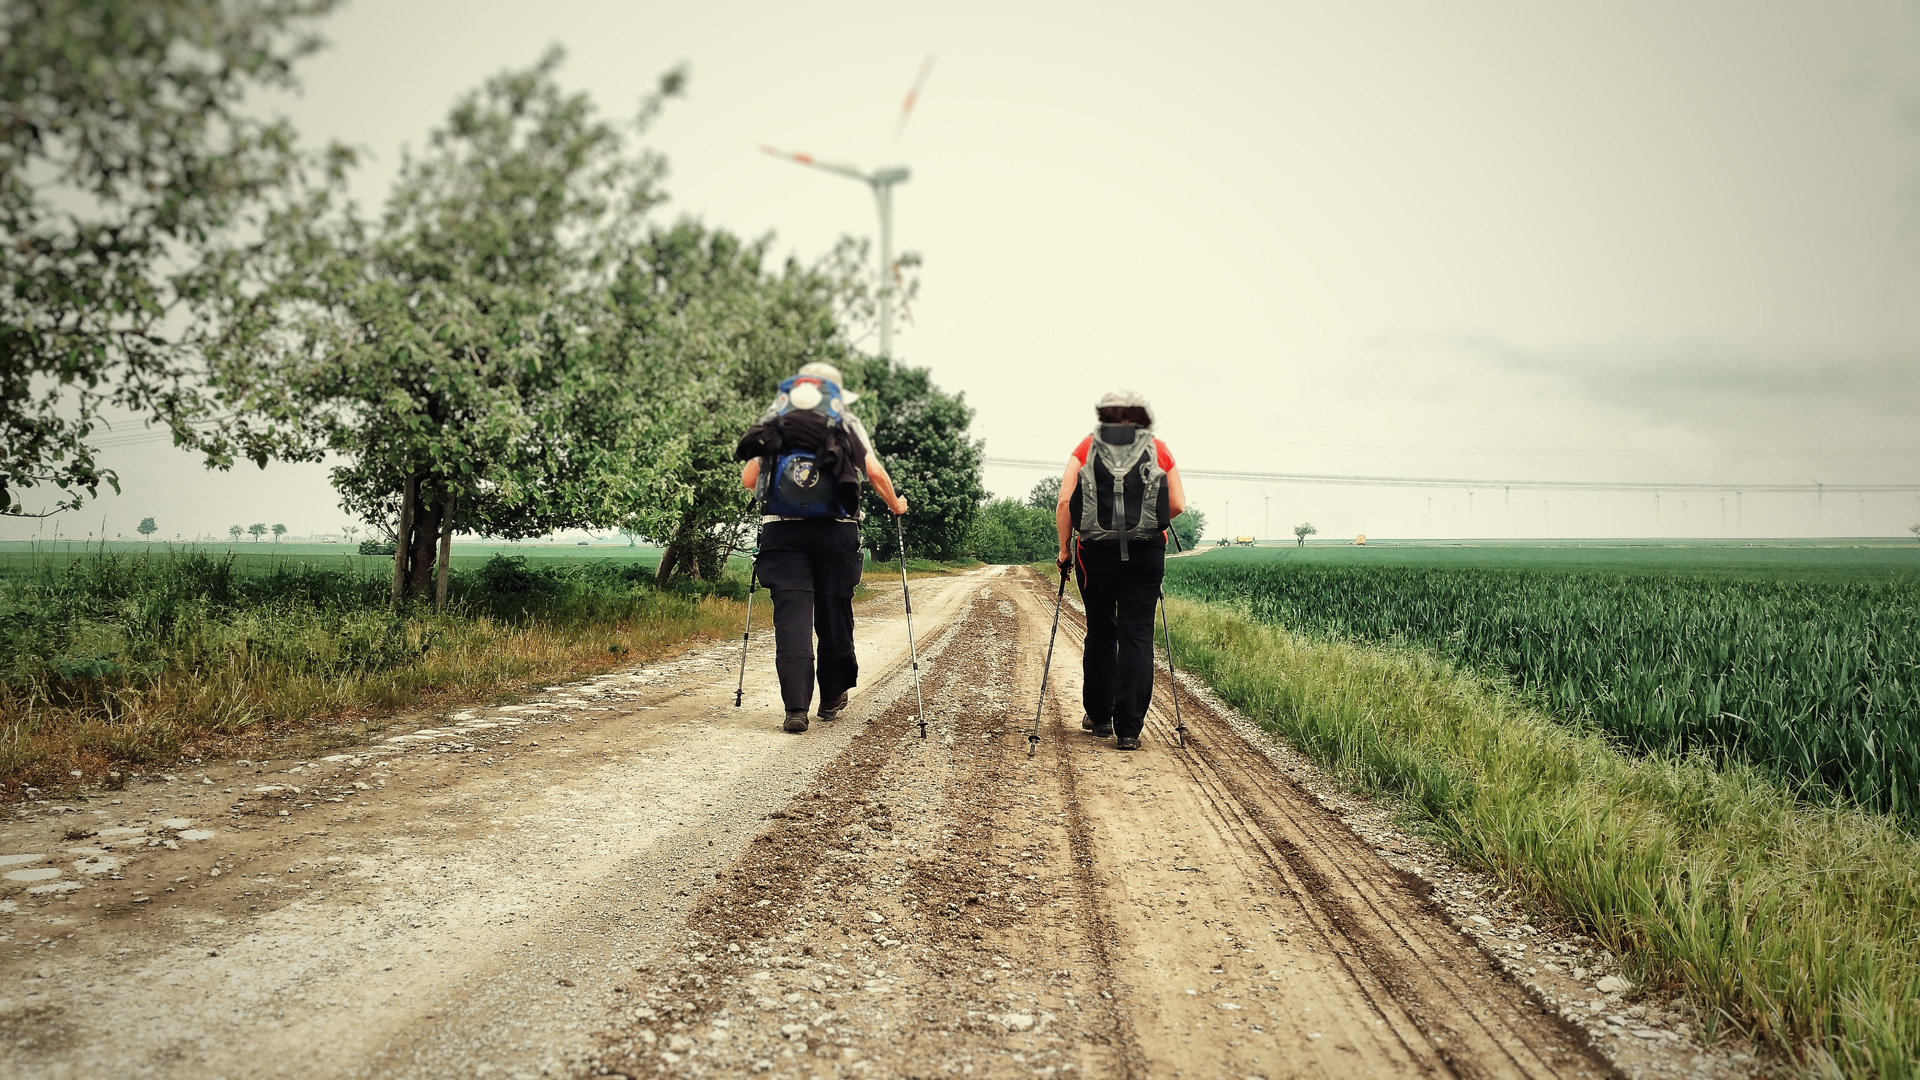 Auf dem Jakobsweg vor Unseburg gehen Johanna und Jacqueline noch immer durch landwirtschaftlich geprägte Flächen